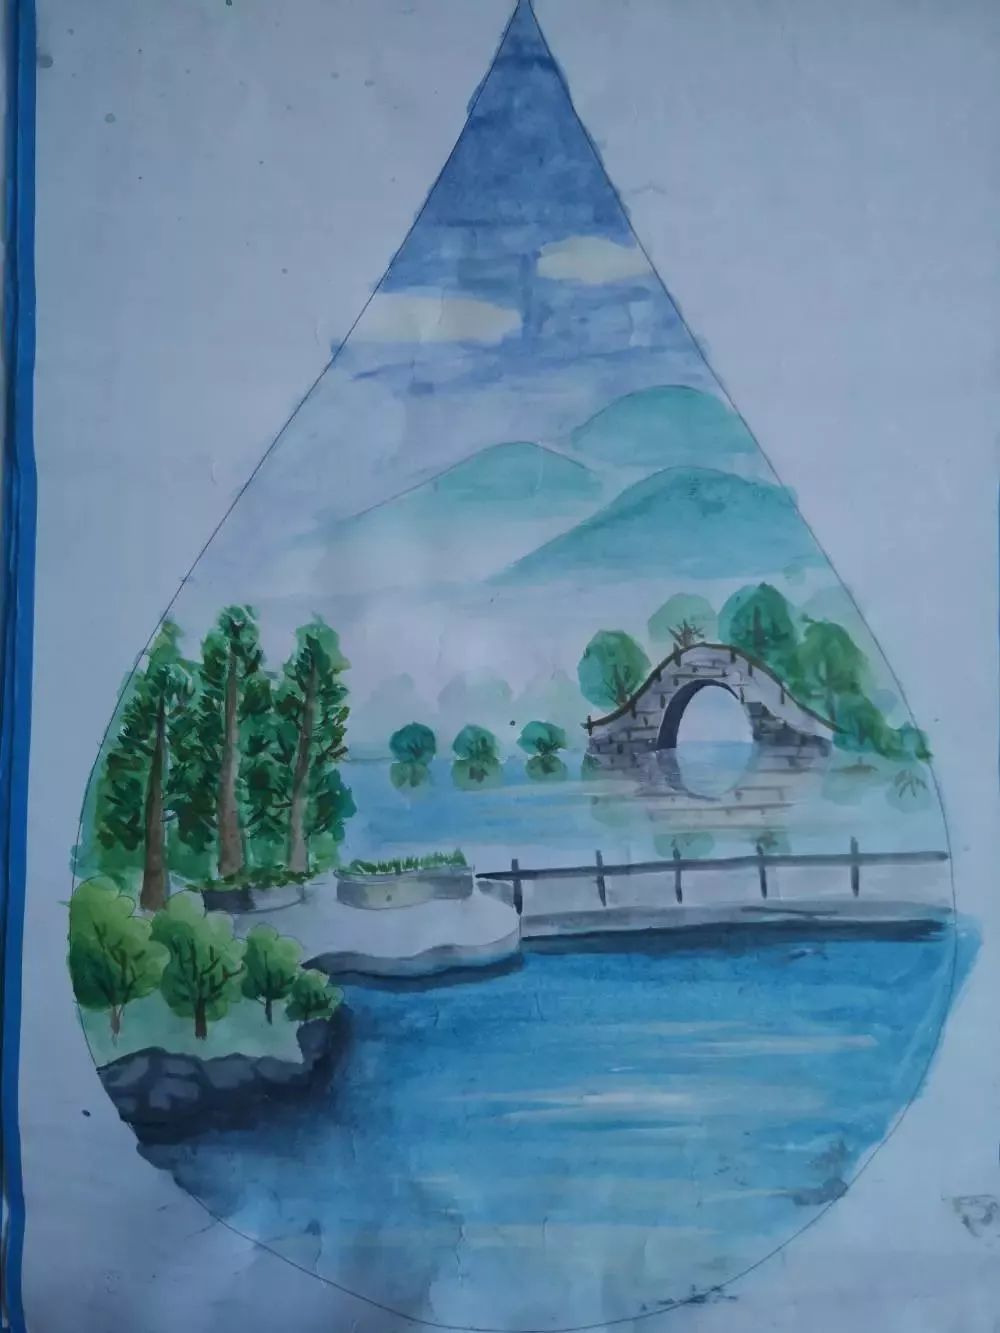 美丽河湖绘画作品图片